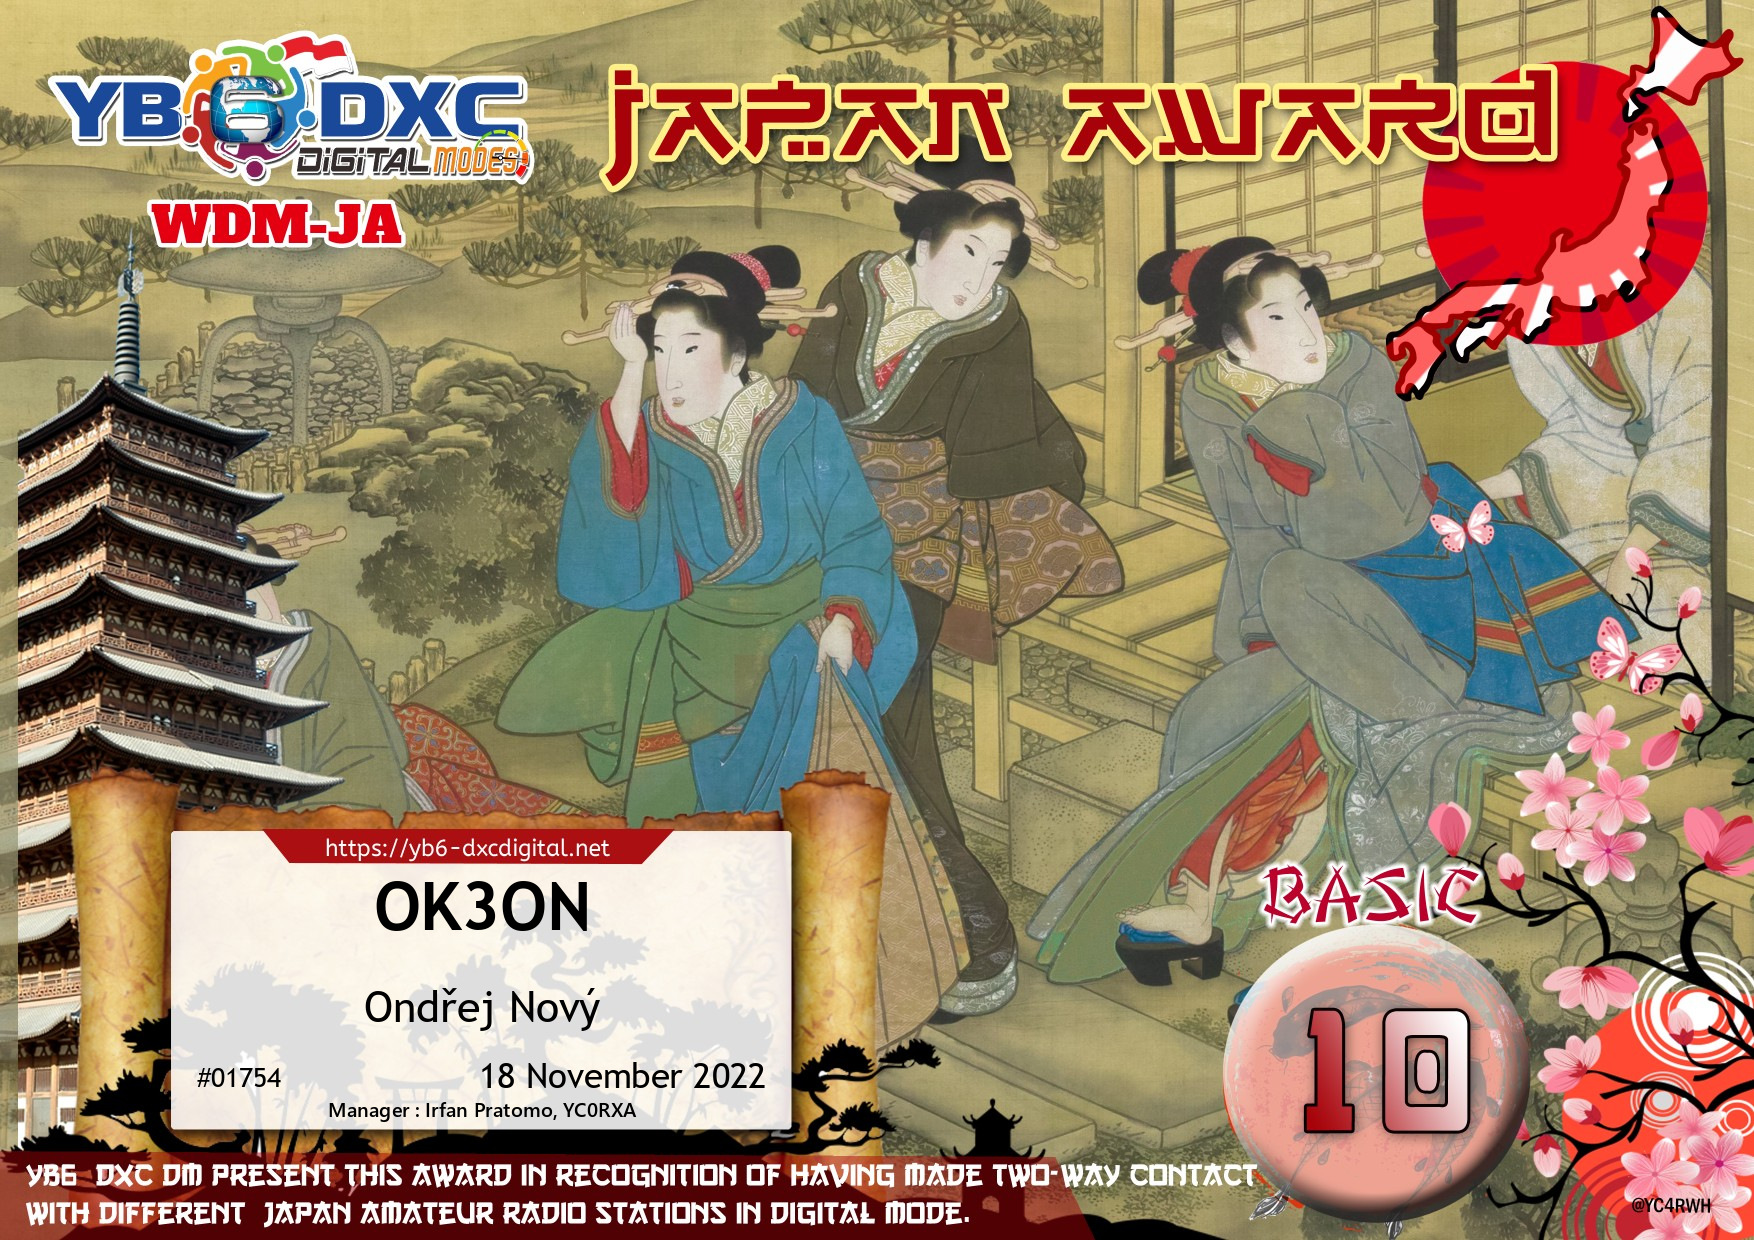 awards/OK3ON-WDMJA-BASIC10_YB6DXC.jpg